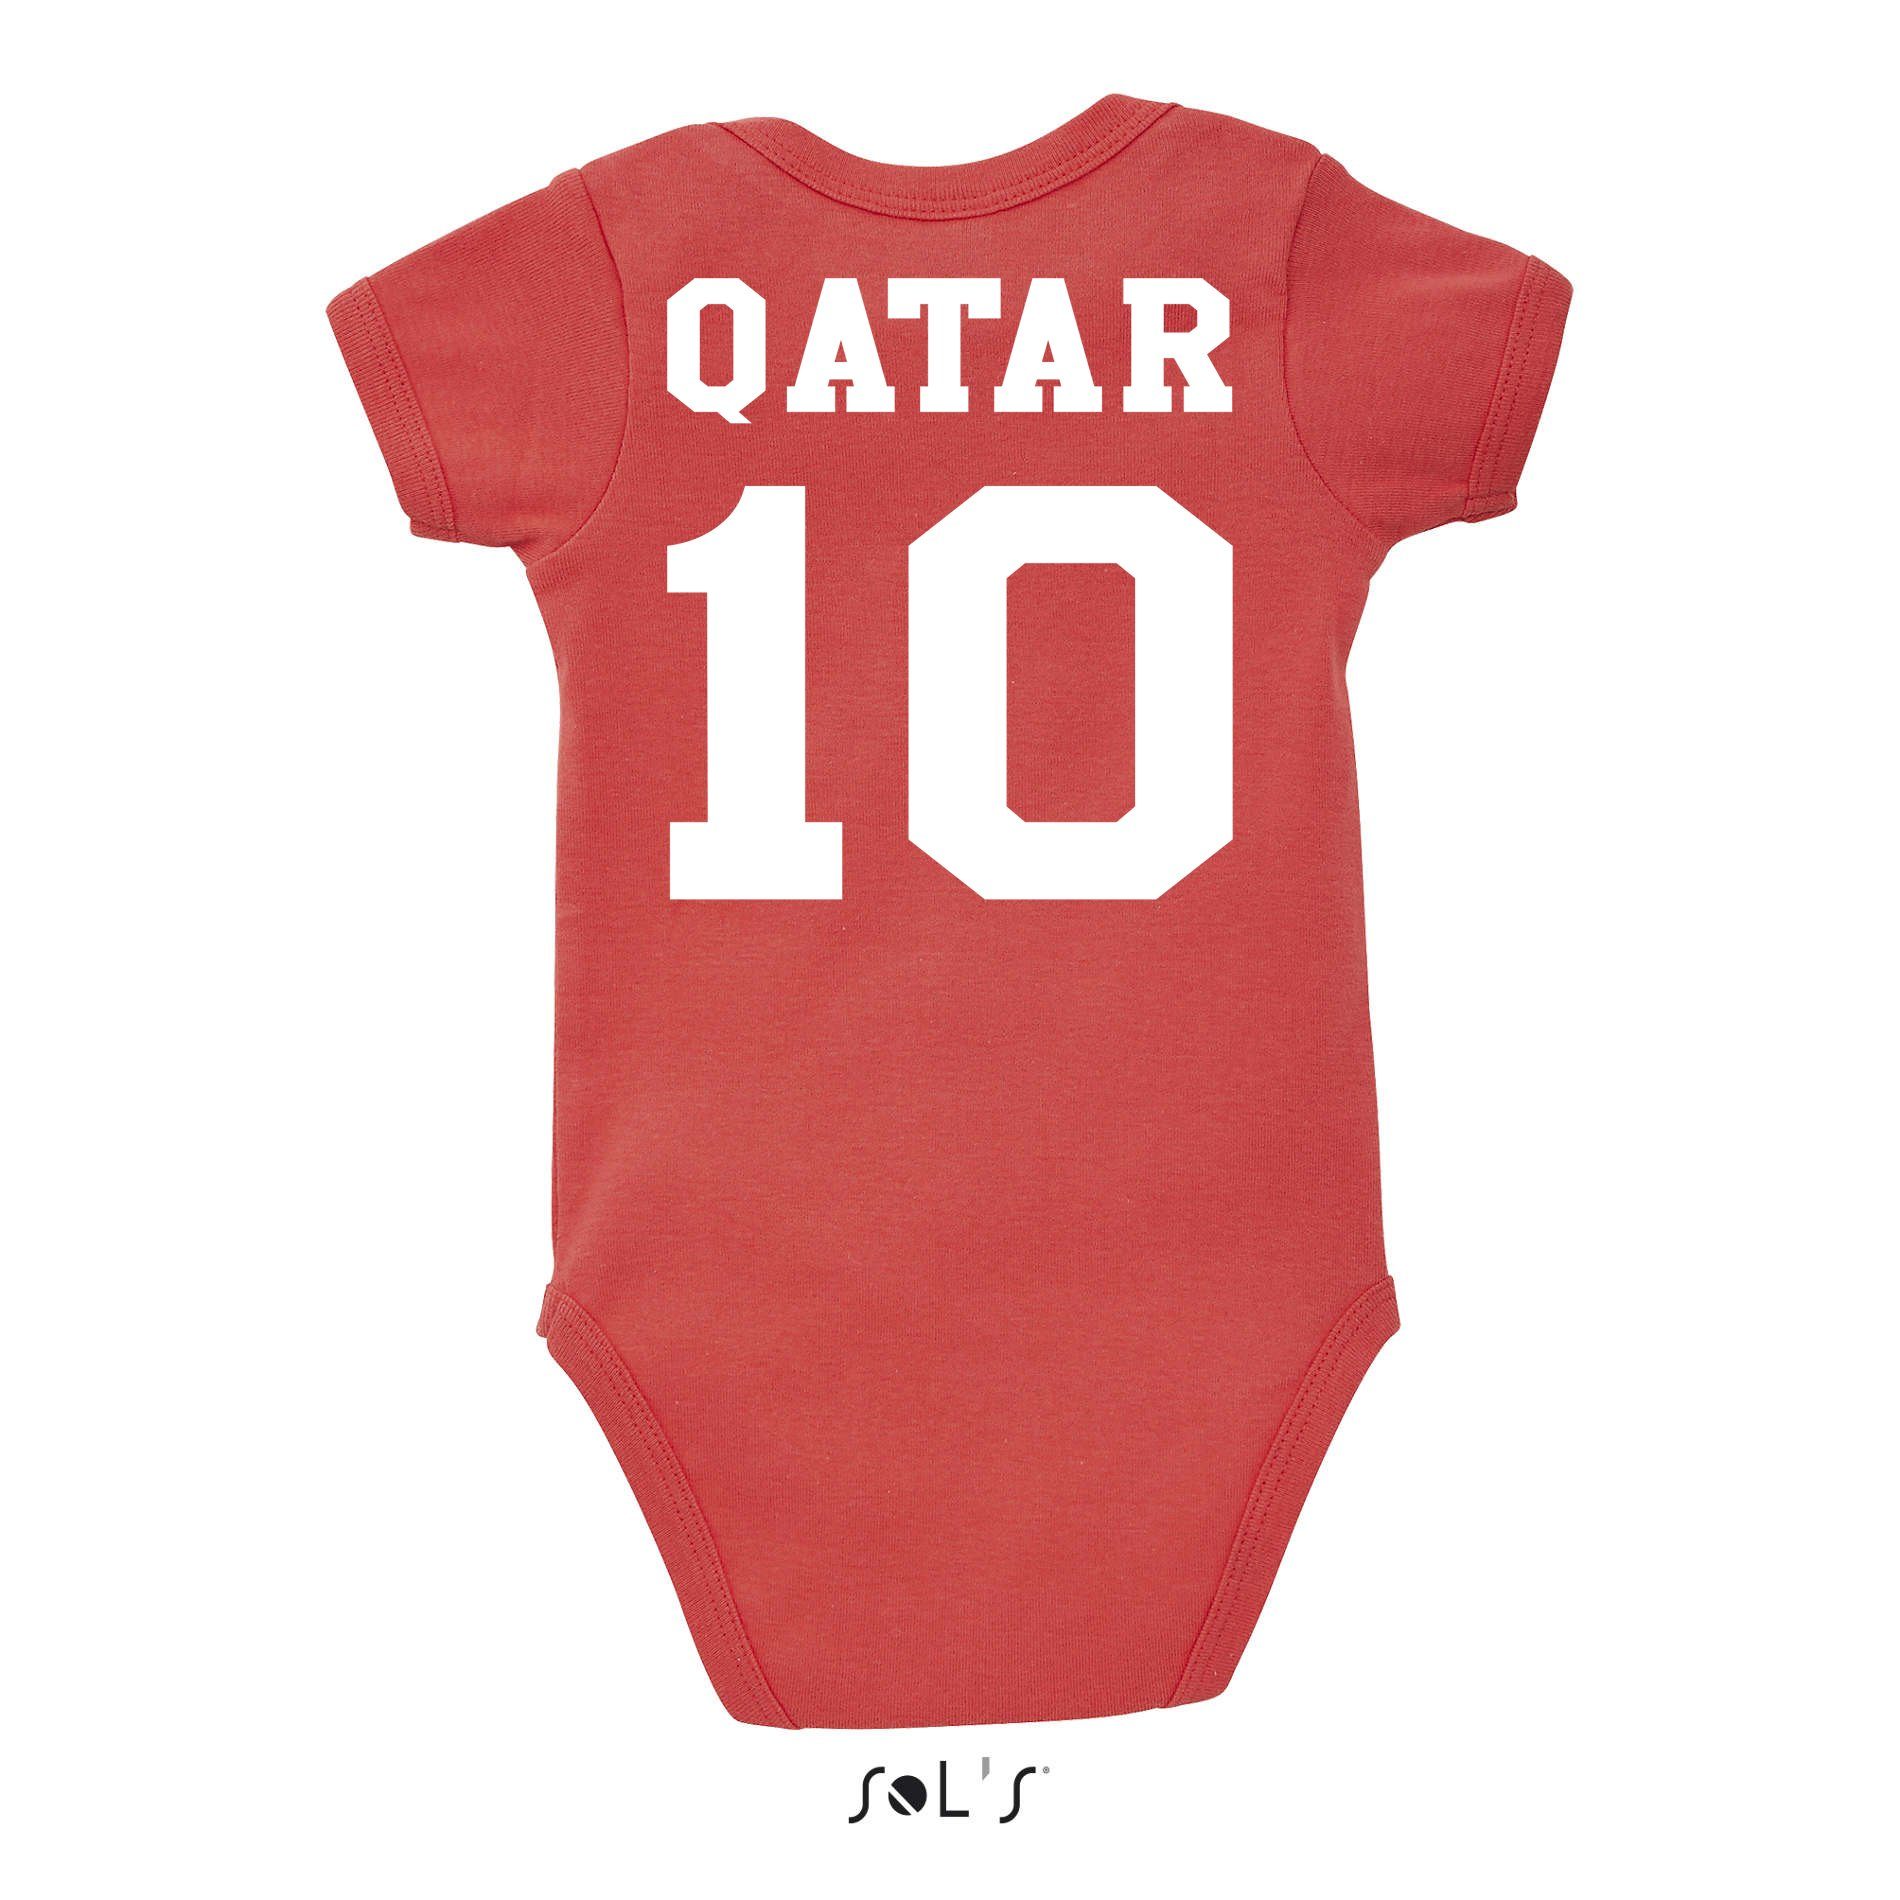 Trikot WM Weltmeister & Brownie Qatar Sport Strampler Blondie Kinder Fußball Baby Katar